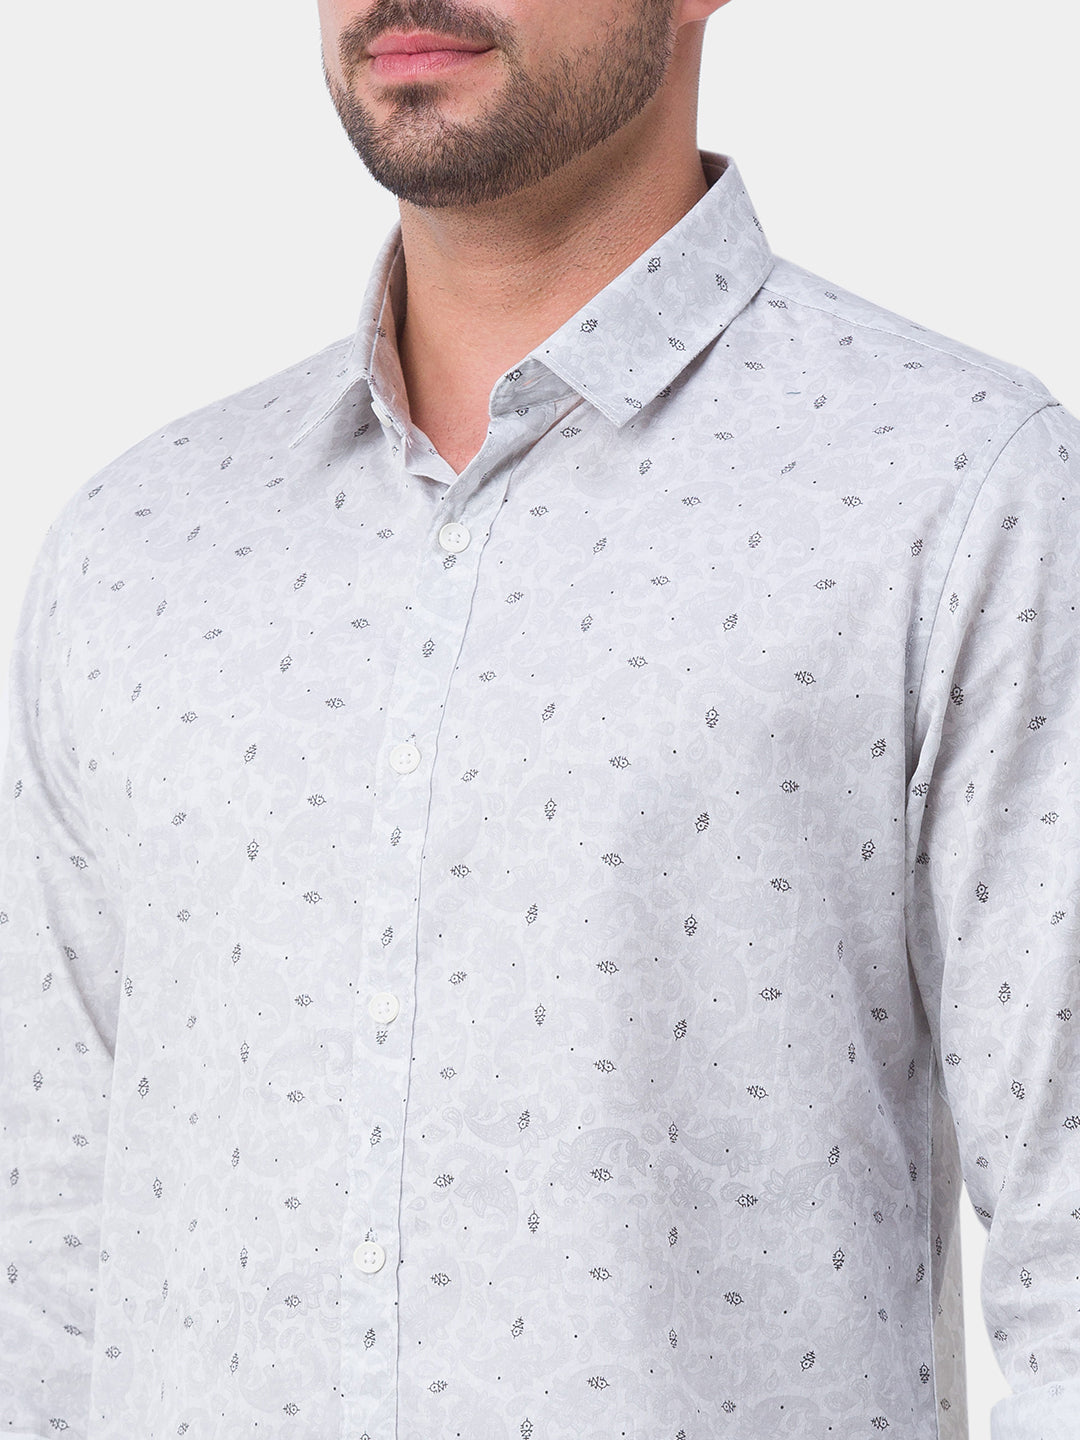 Spykar White Satin Full Sleeve Printed Shirt For Men